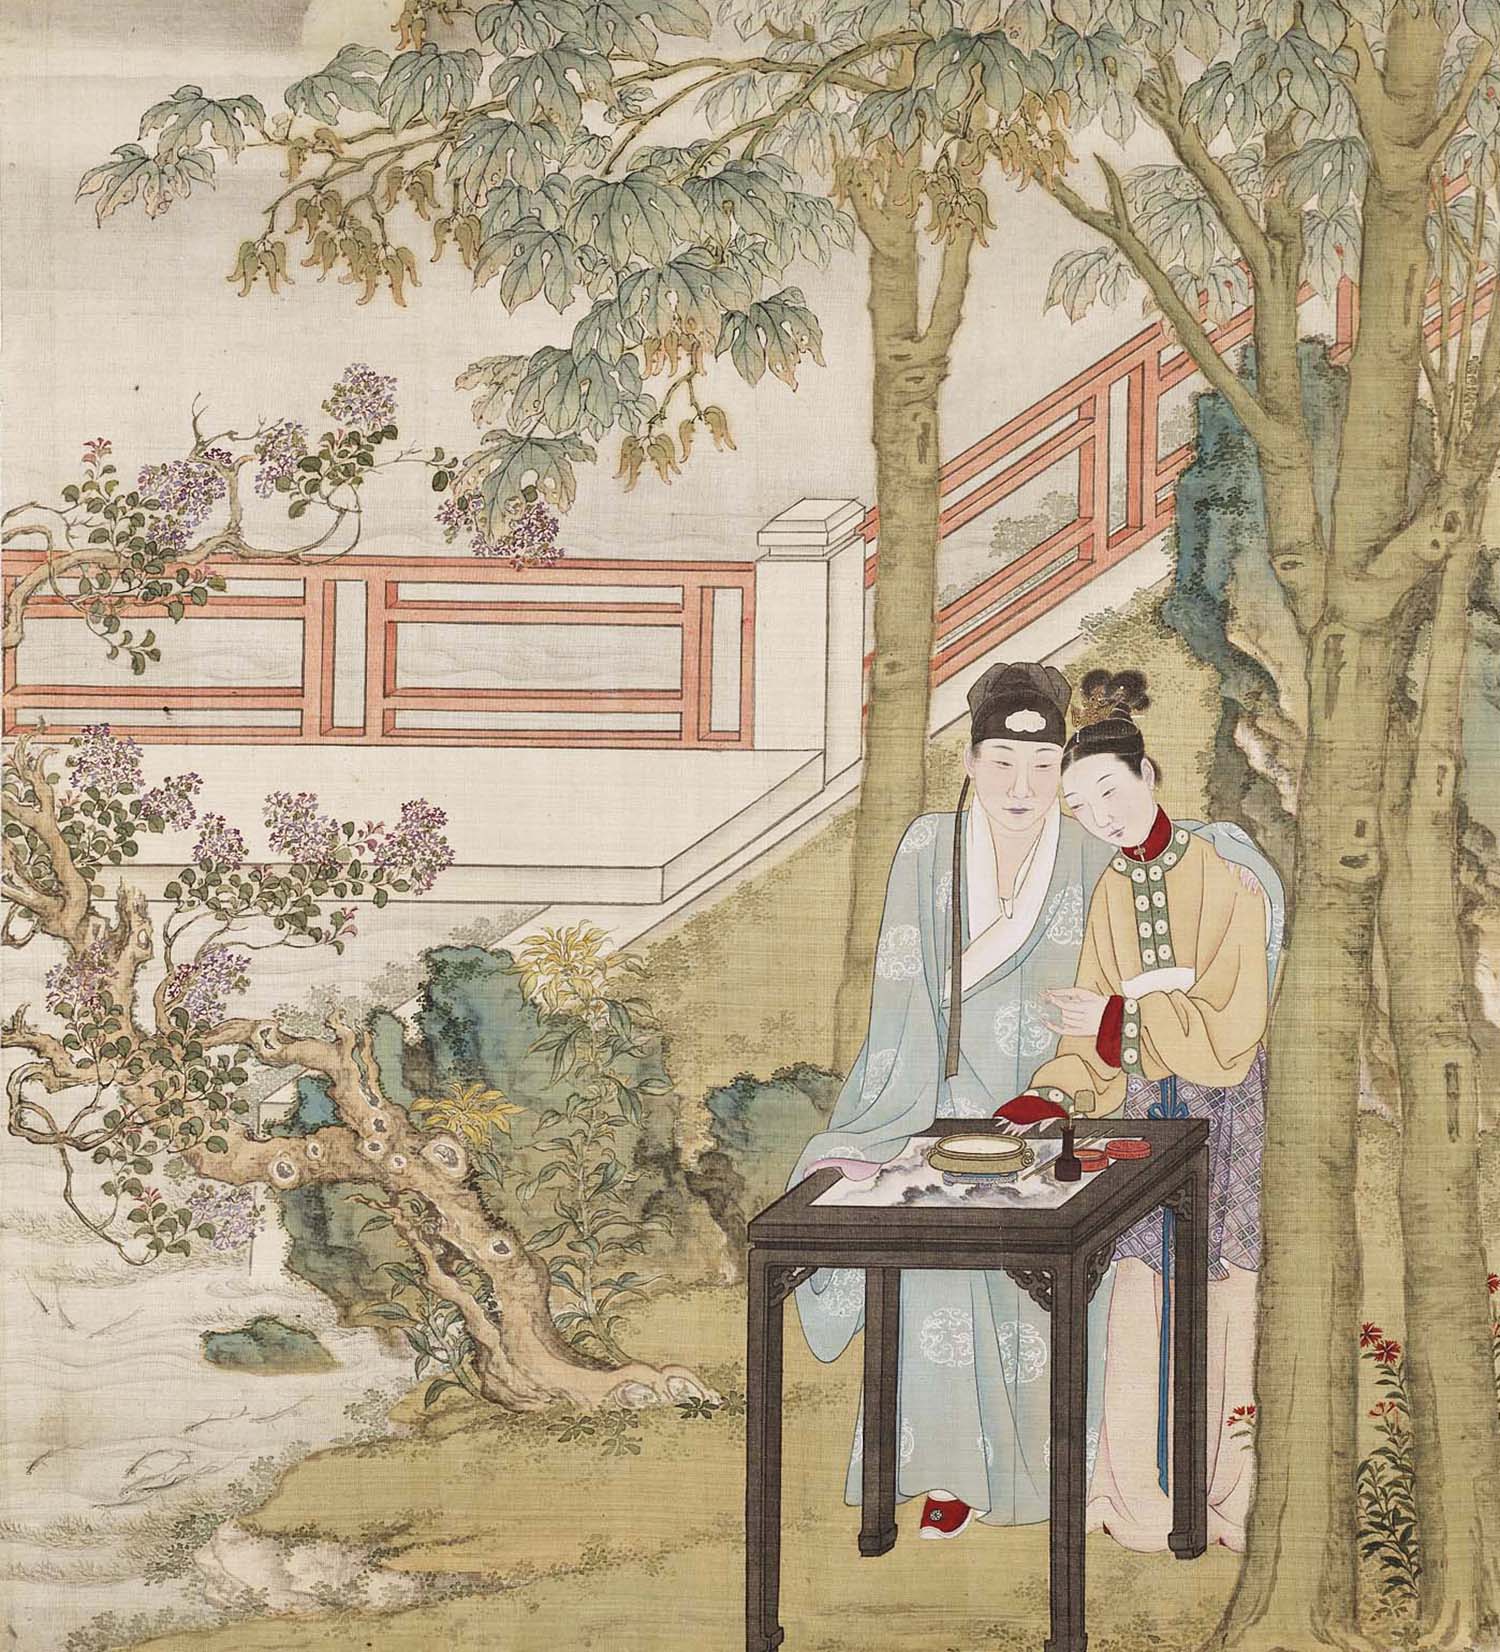 中国古代夫妻间的爱情,不仅相敬如宾,而且委婉动听